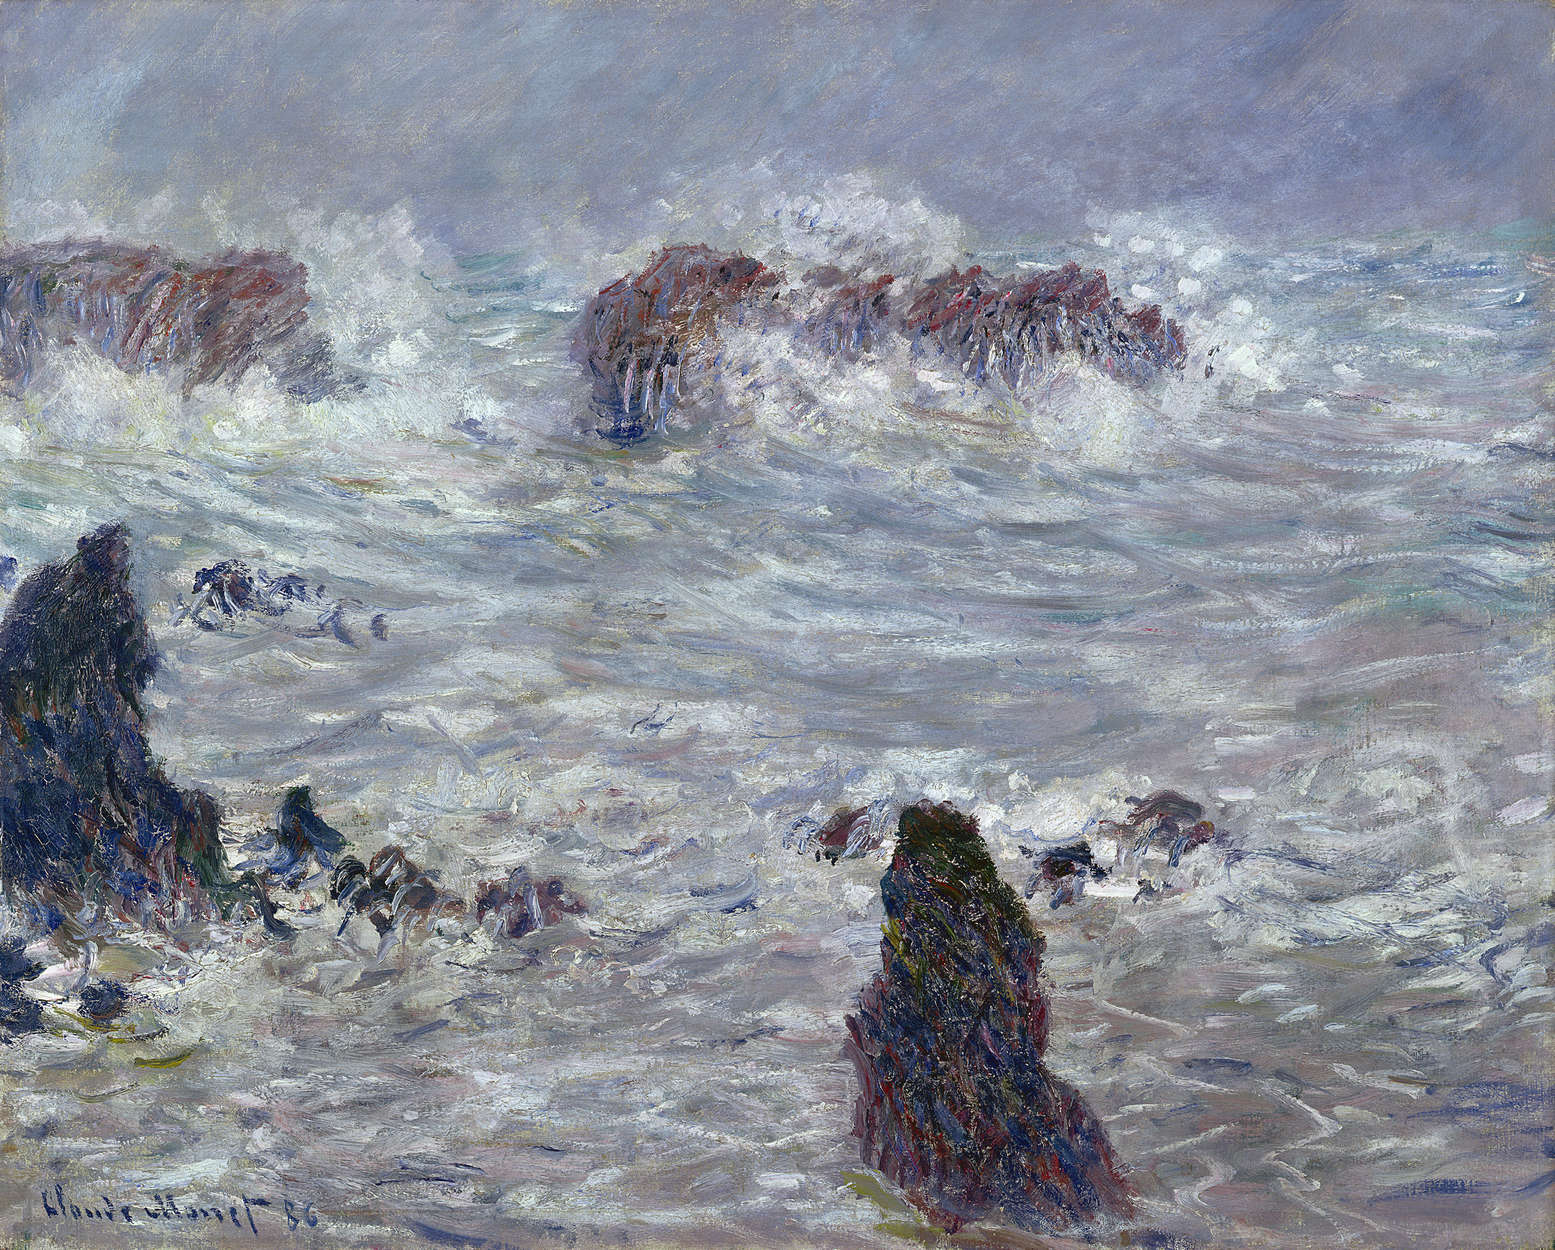             Papier peint panoramique "Tempête au large" de Claude Monet
        